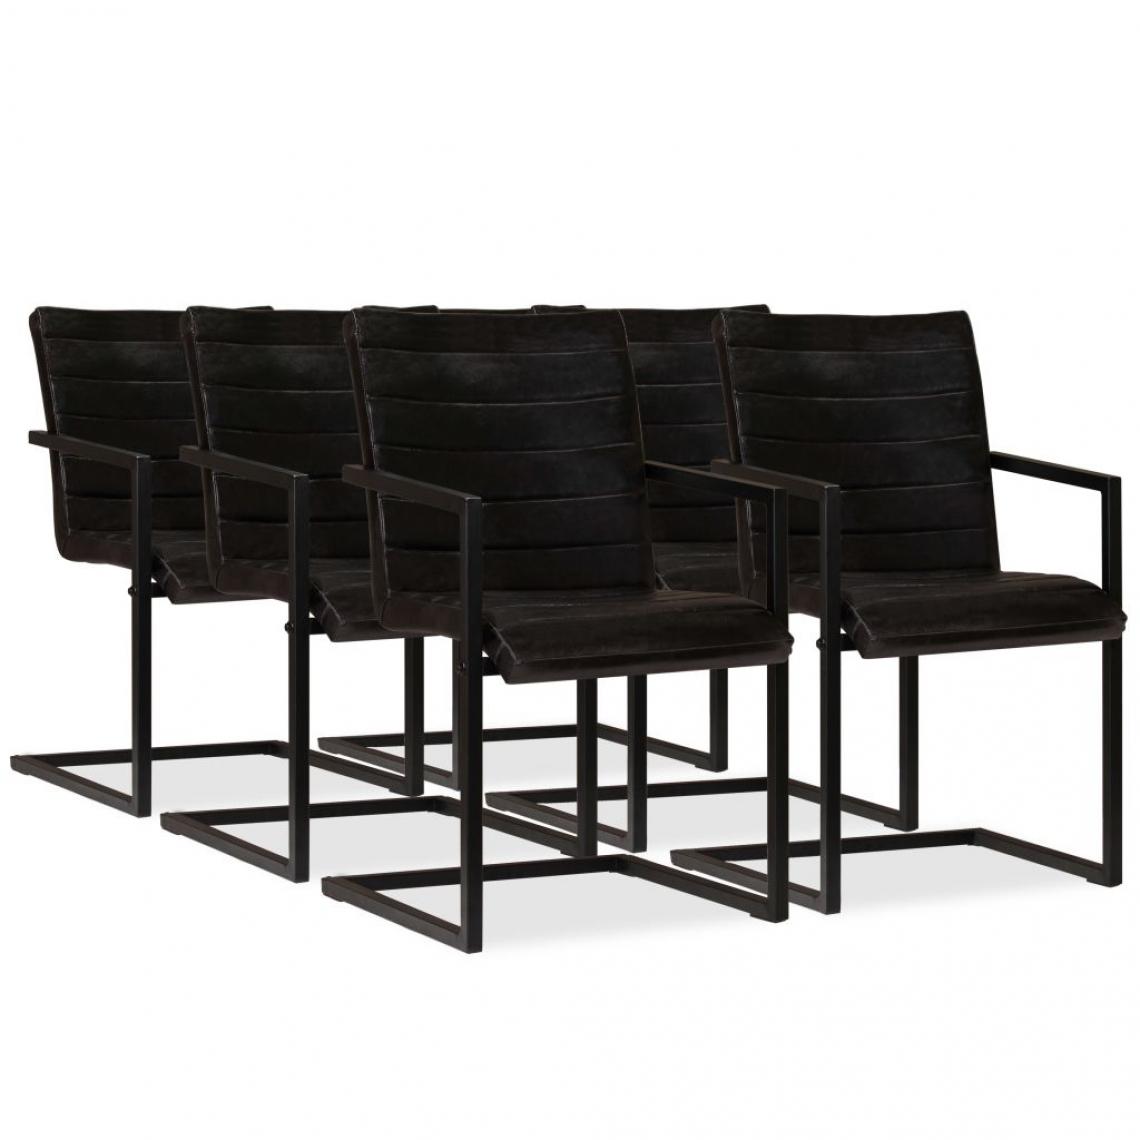 Decoshop26 - Lot de 6 chaises de salle à manger cuisine design industriel chic en cuir véritable anthracite CDS022112 - Chaises